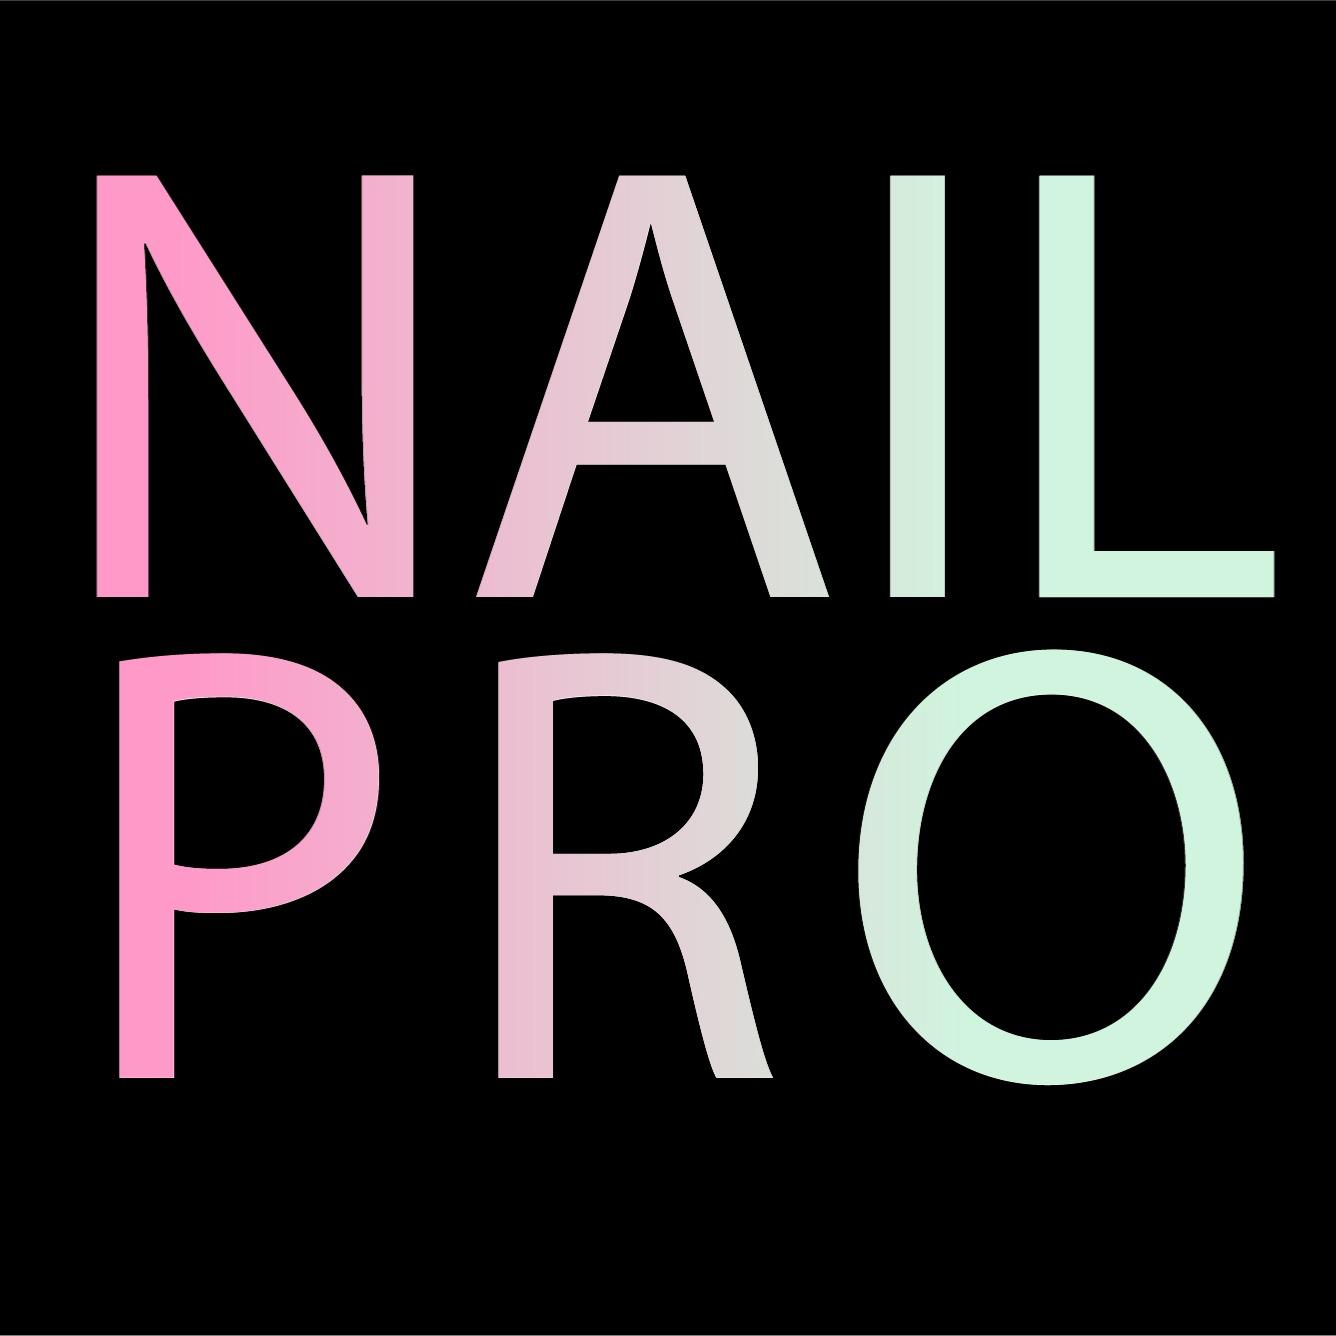 Nail Pro - Chicago, IL 60602 - (312)263-9602 | ShowMeLocal.com